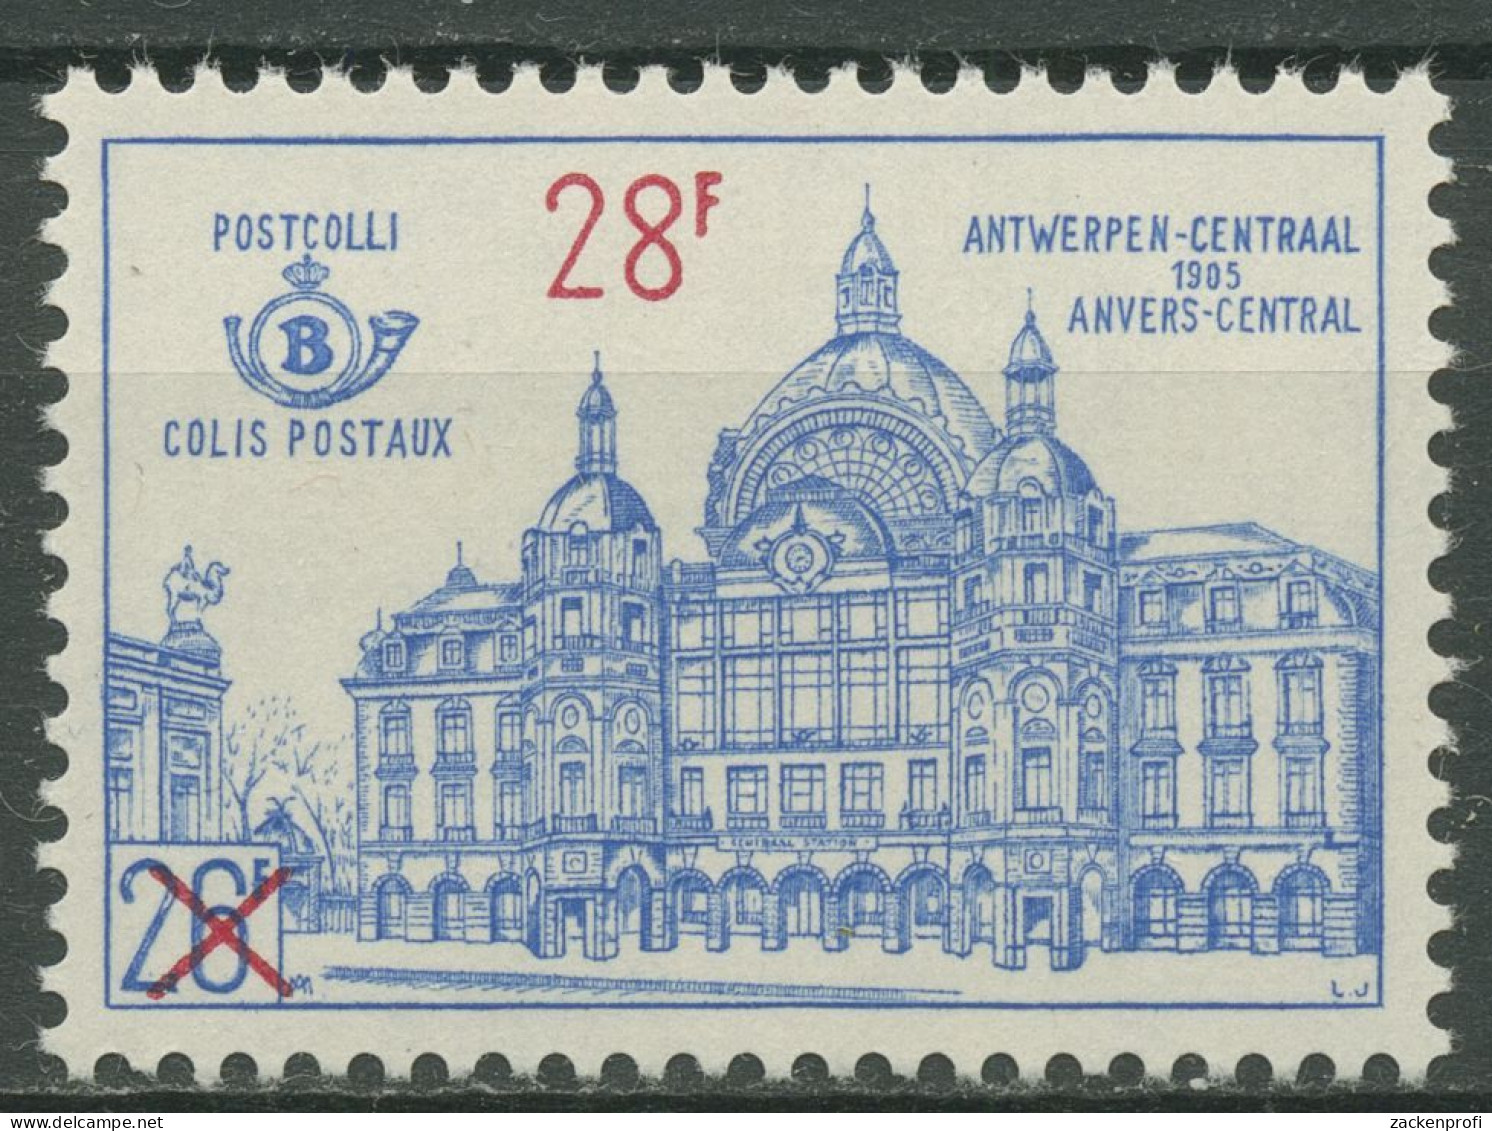 Belgien 1964 Postpaketmarke Bahnhof Antwerpen Mit Aufdruck PP 57 Postfrisch - Mint